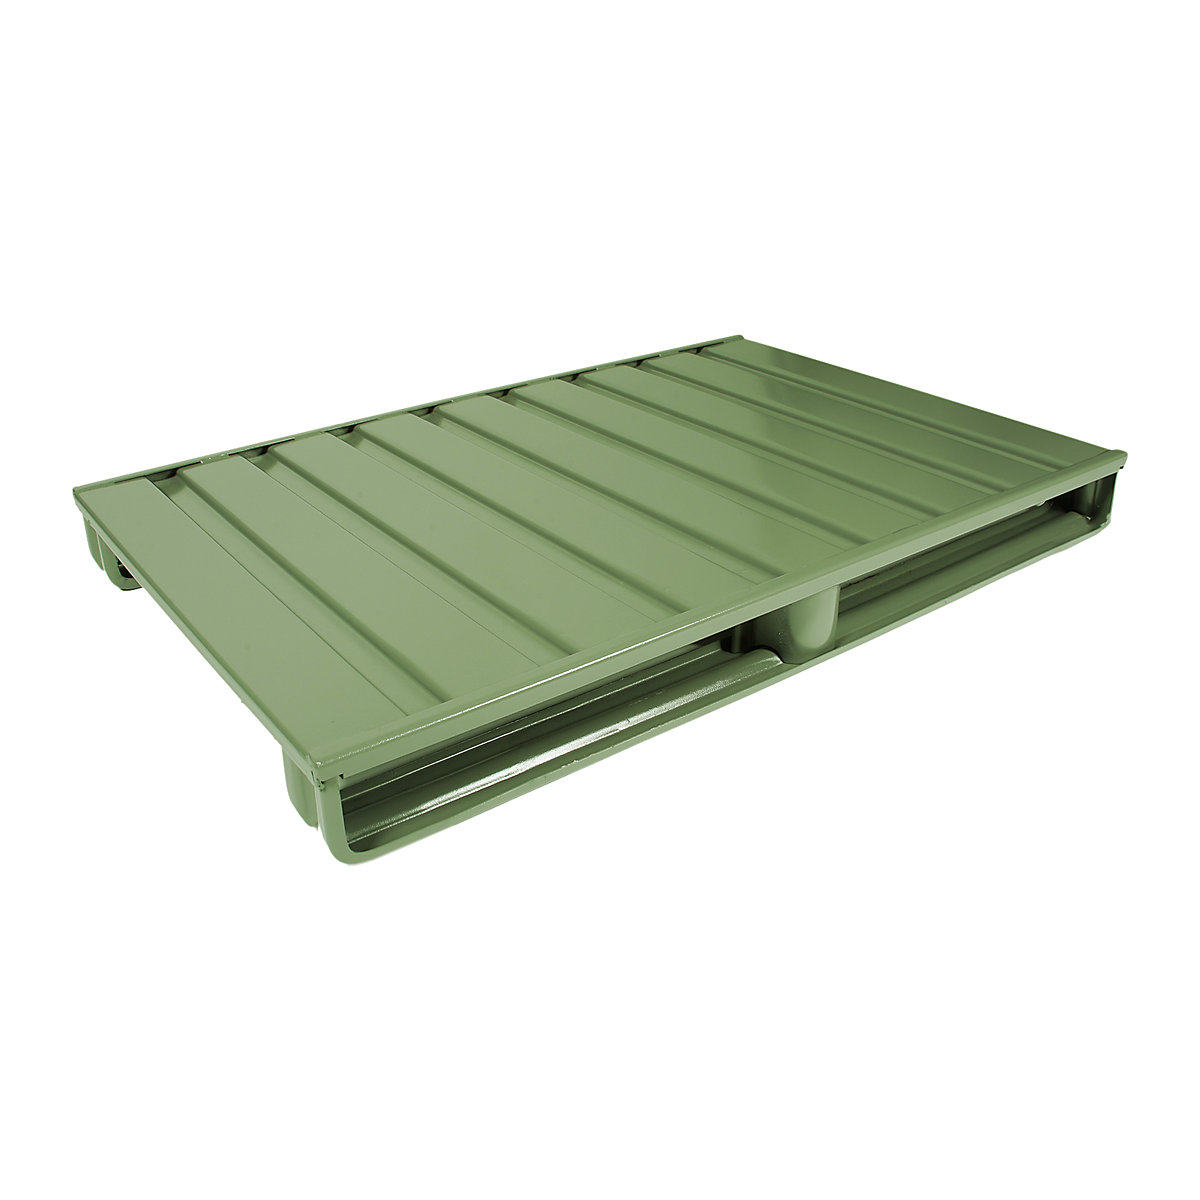 Ploska jeklena paleta – Heson, DxŠ 1000 x 800 mm, nosilnost 2000 kg, reseda zelene barve, od 10 kosov-3